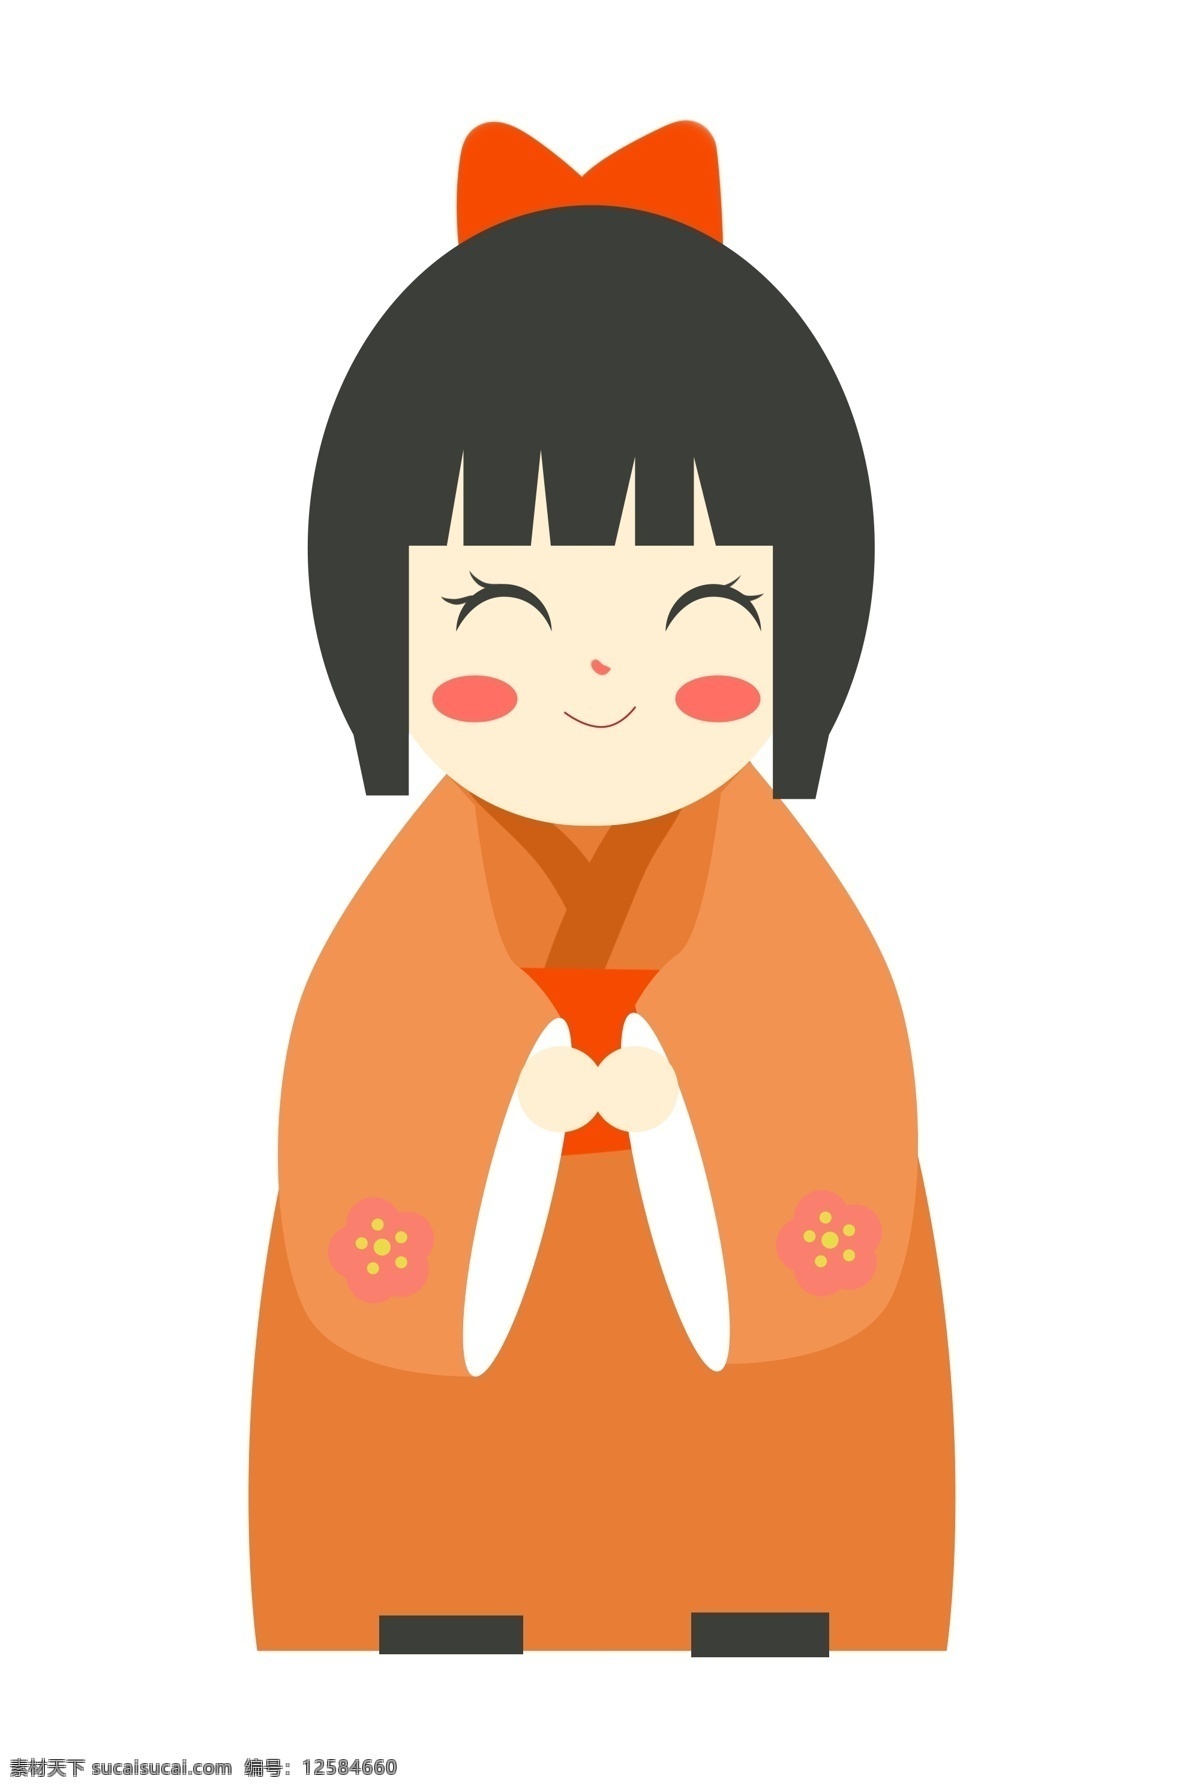 日本 漂亮 小女孩 日本人物插画 漂亮的小女孩 害羞的小女孩 卡通人物 橙色的蝴蝶结 橙色的和服